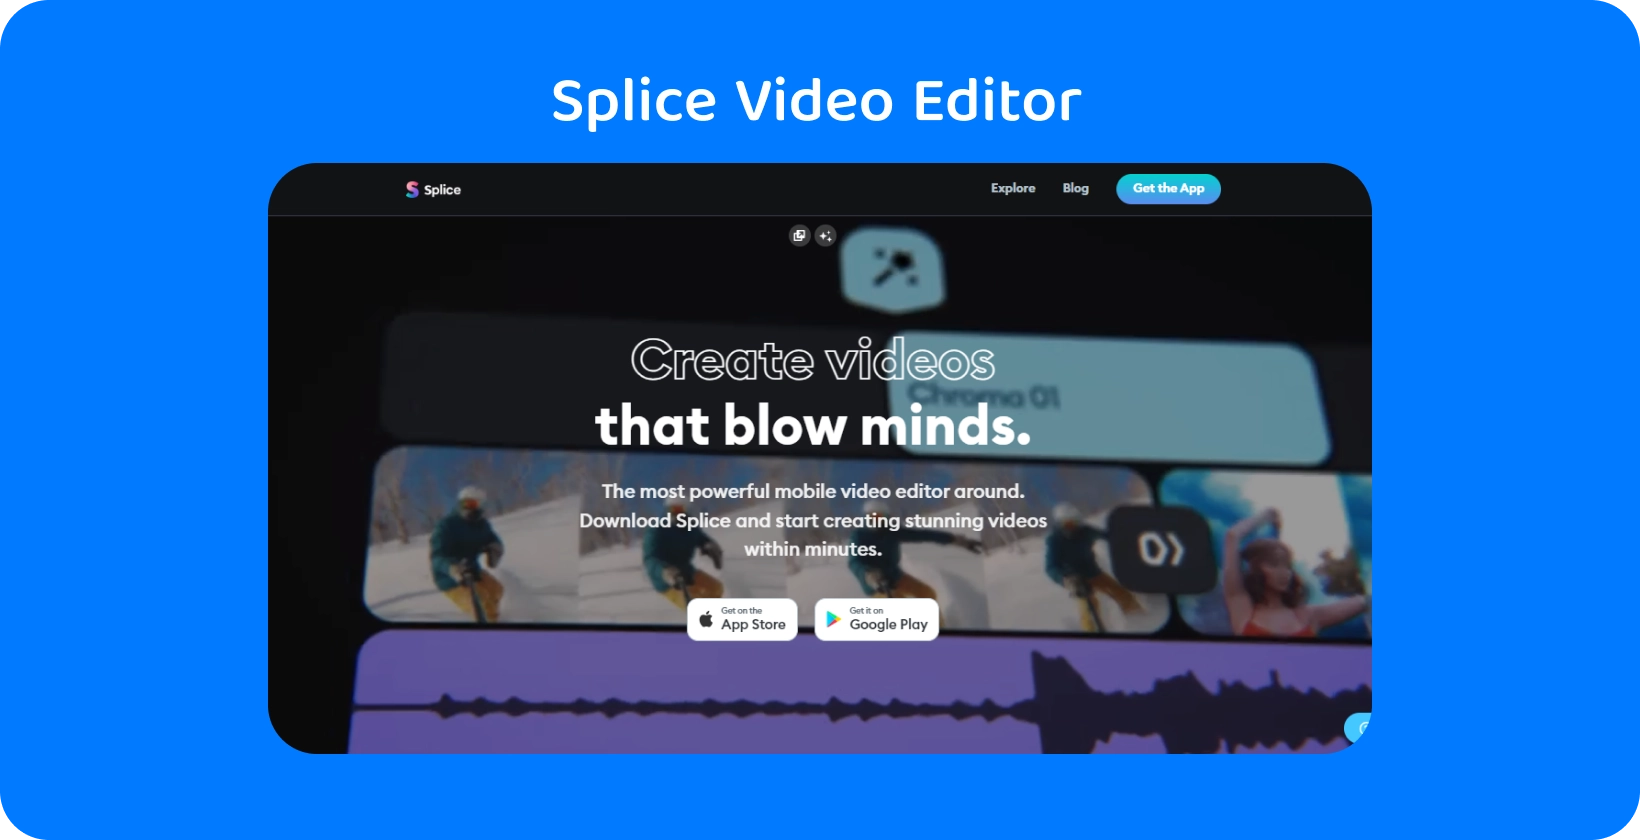 在智能手机上Splice应用程序推广，将其吹捧为创建惊人视频的最强大的移动视频编辑器。